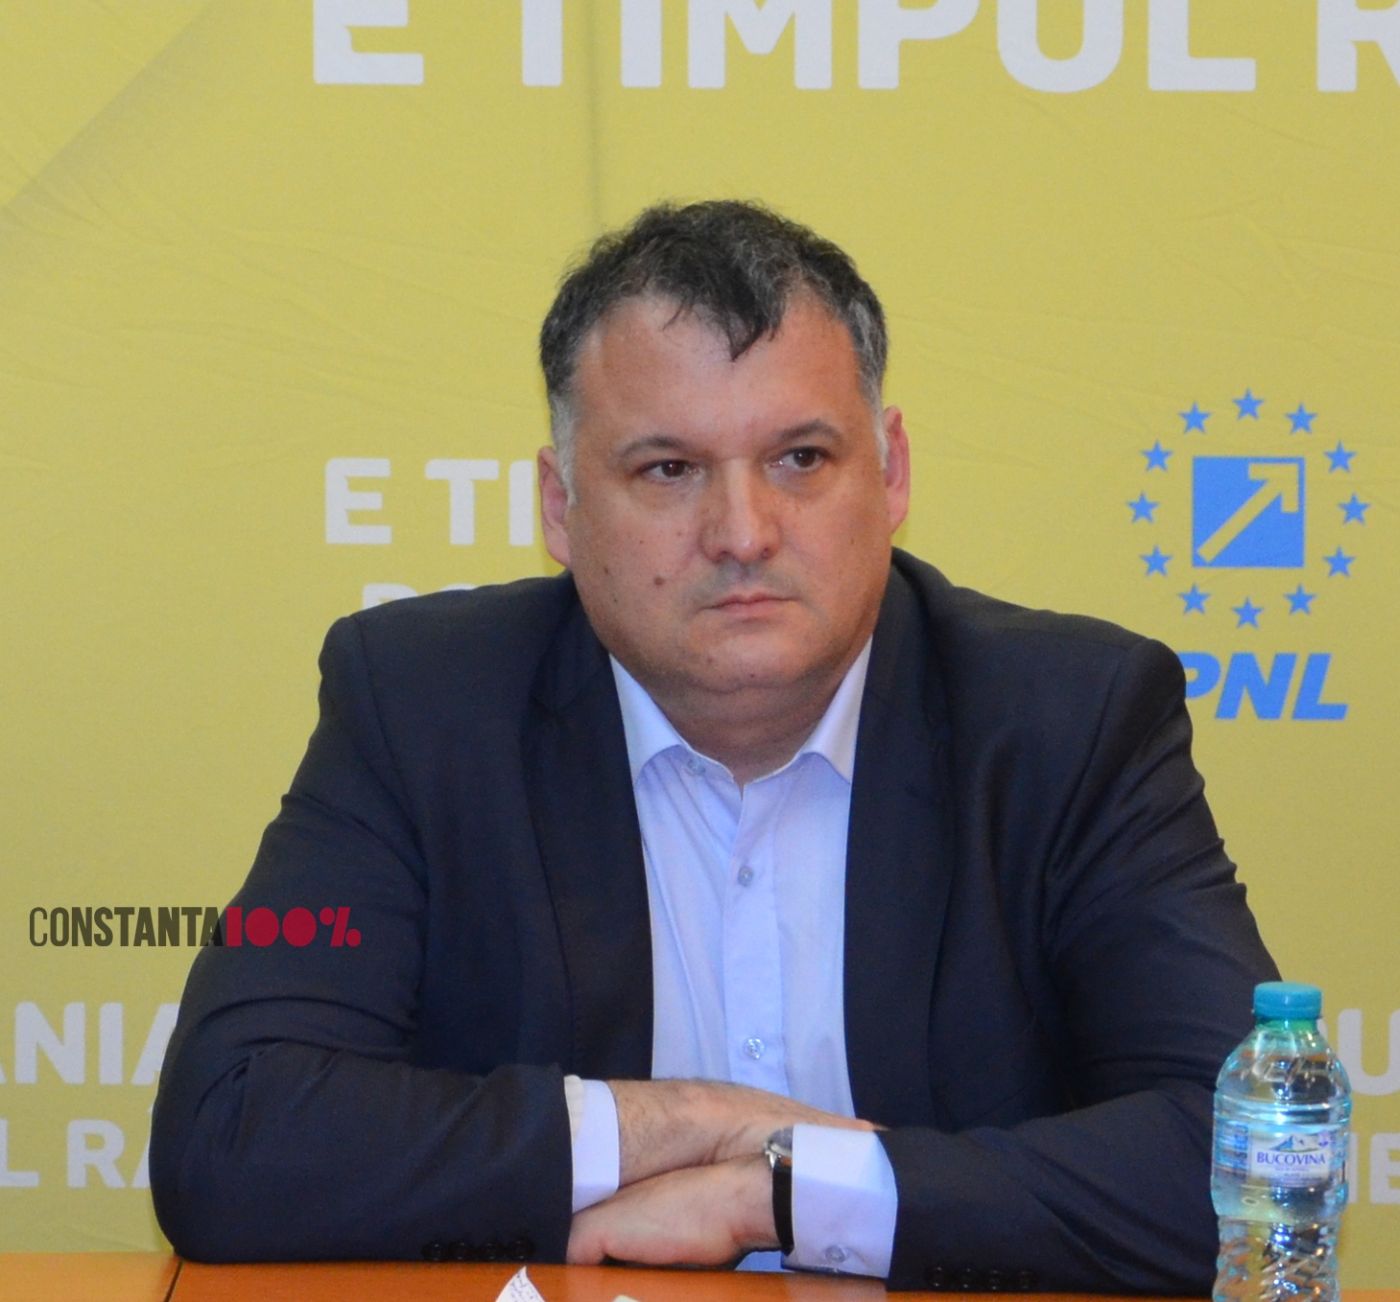 Bogdan Huțucă: „Nu sunt fericit, nici împăcat cu această idee”. Ce spune despre colaborarea cu USR